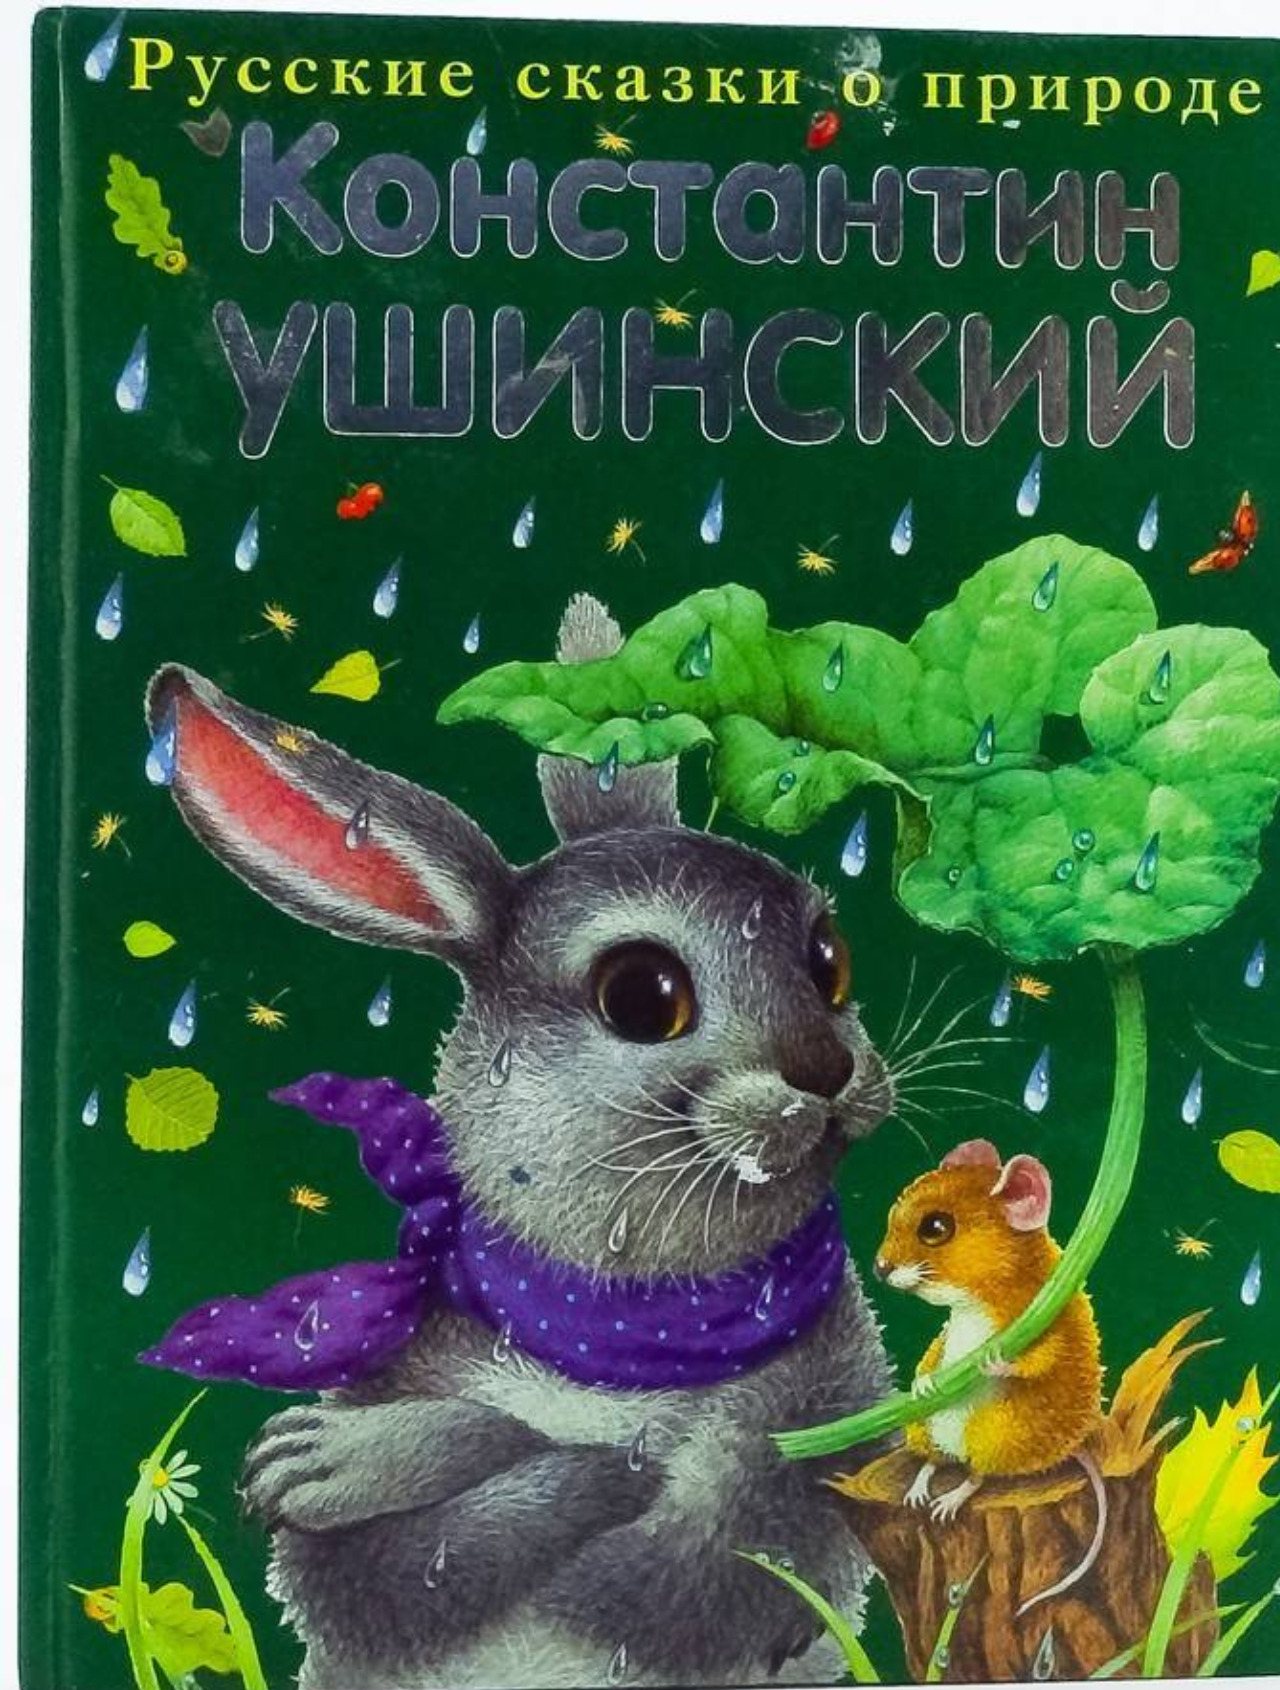 Ушинский какие произведения. Ушинский, к.д. рассказы и сказки книга.